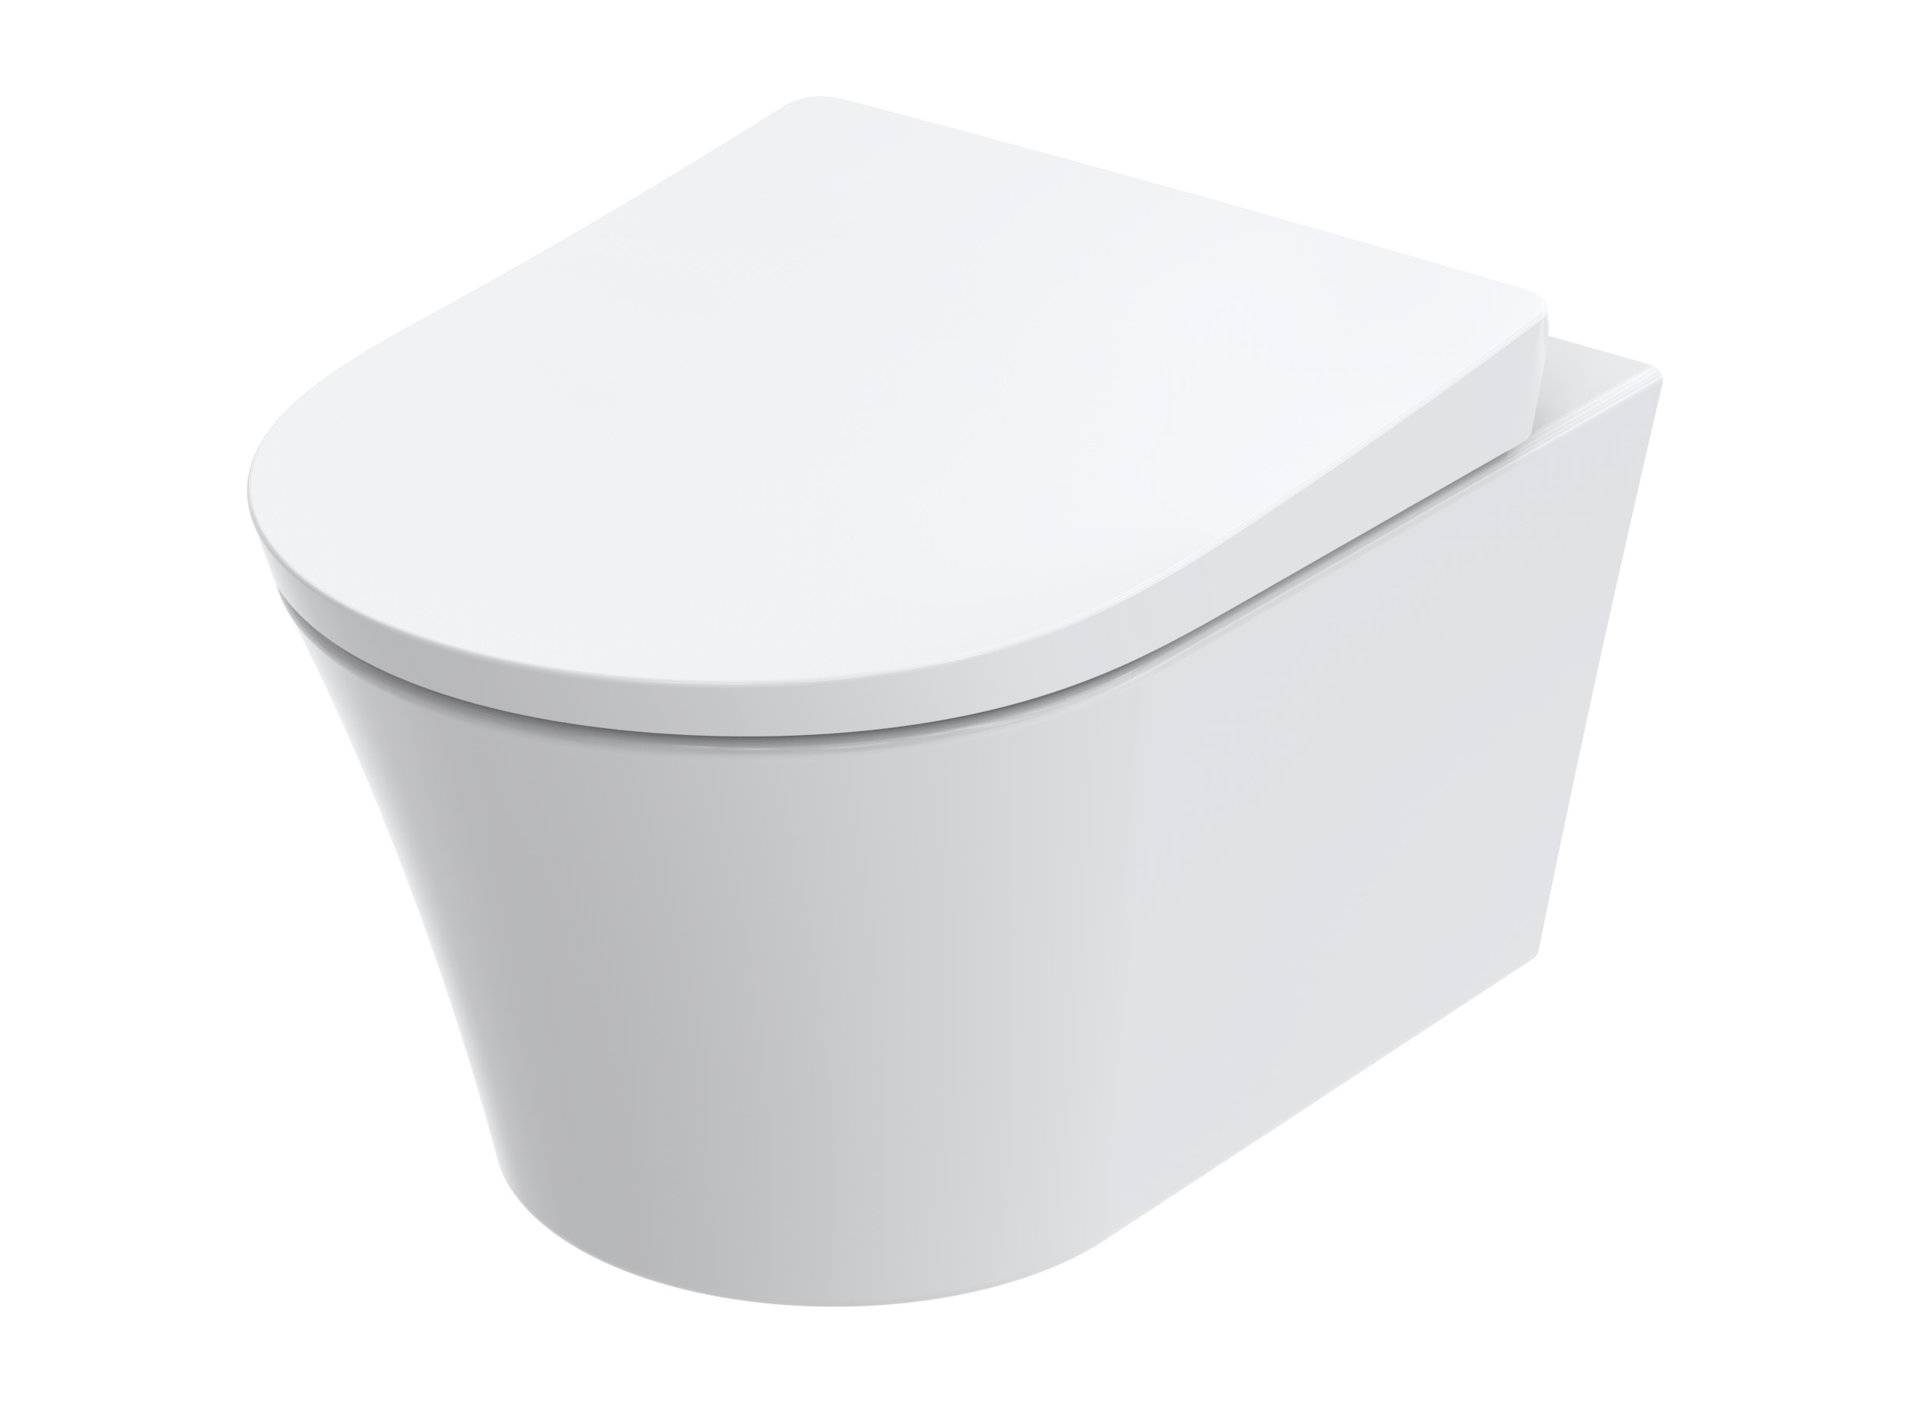 TOTO GP Wand-WC, Tiefspüler, für Washlet RG Lite mit seitliche Anschlüsse, 380x540x335mm, CW553Y von TOTO Europe GmbH